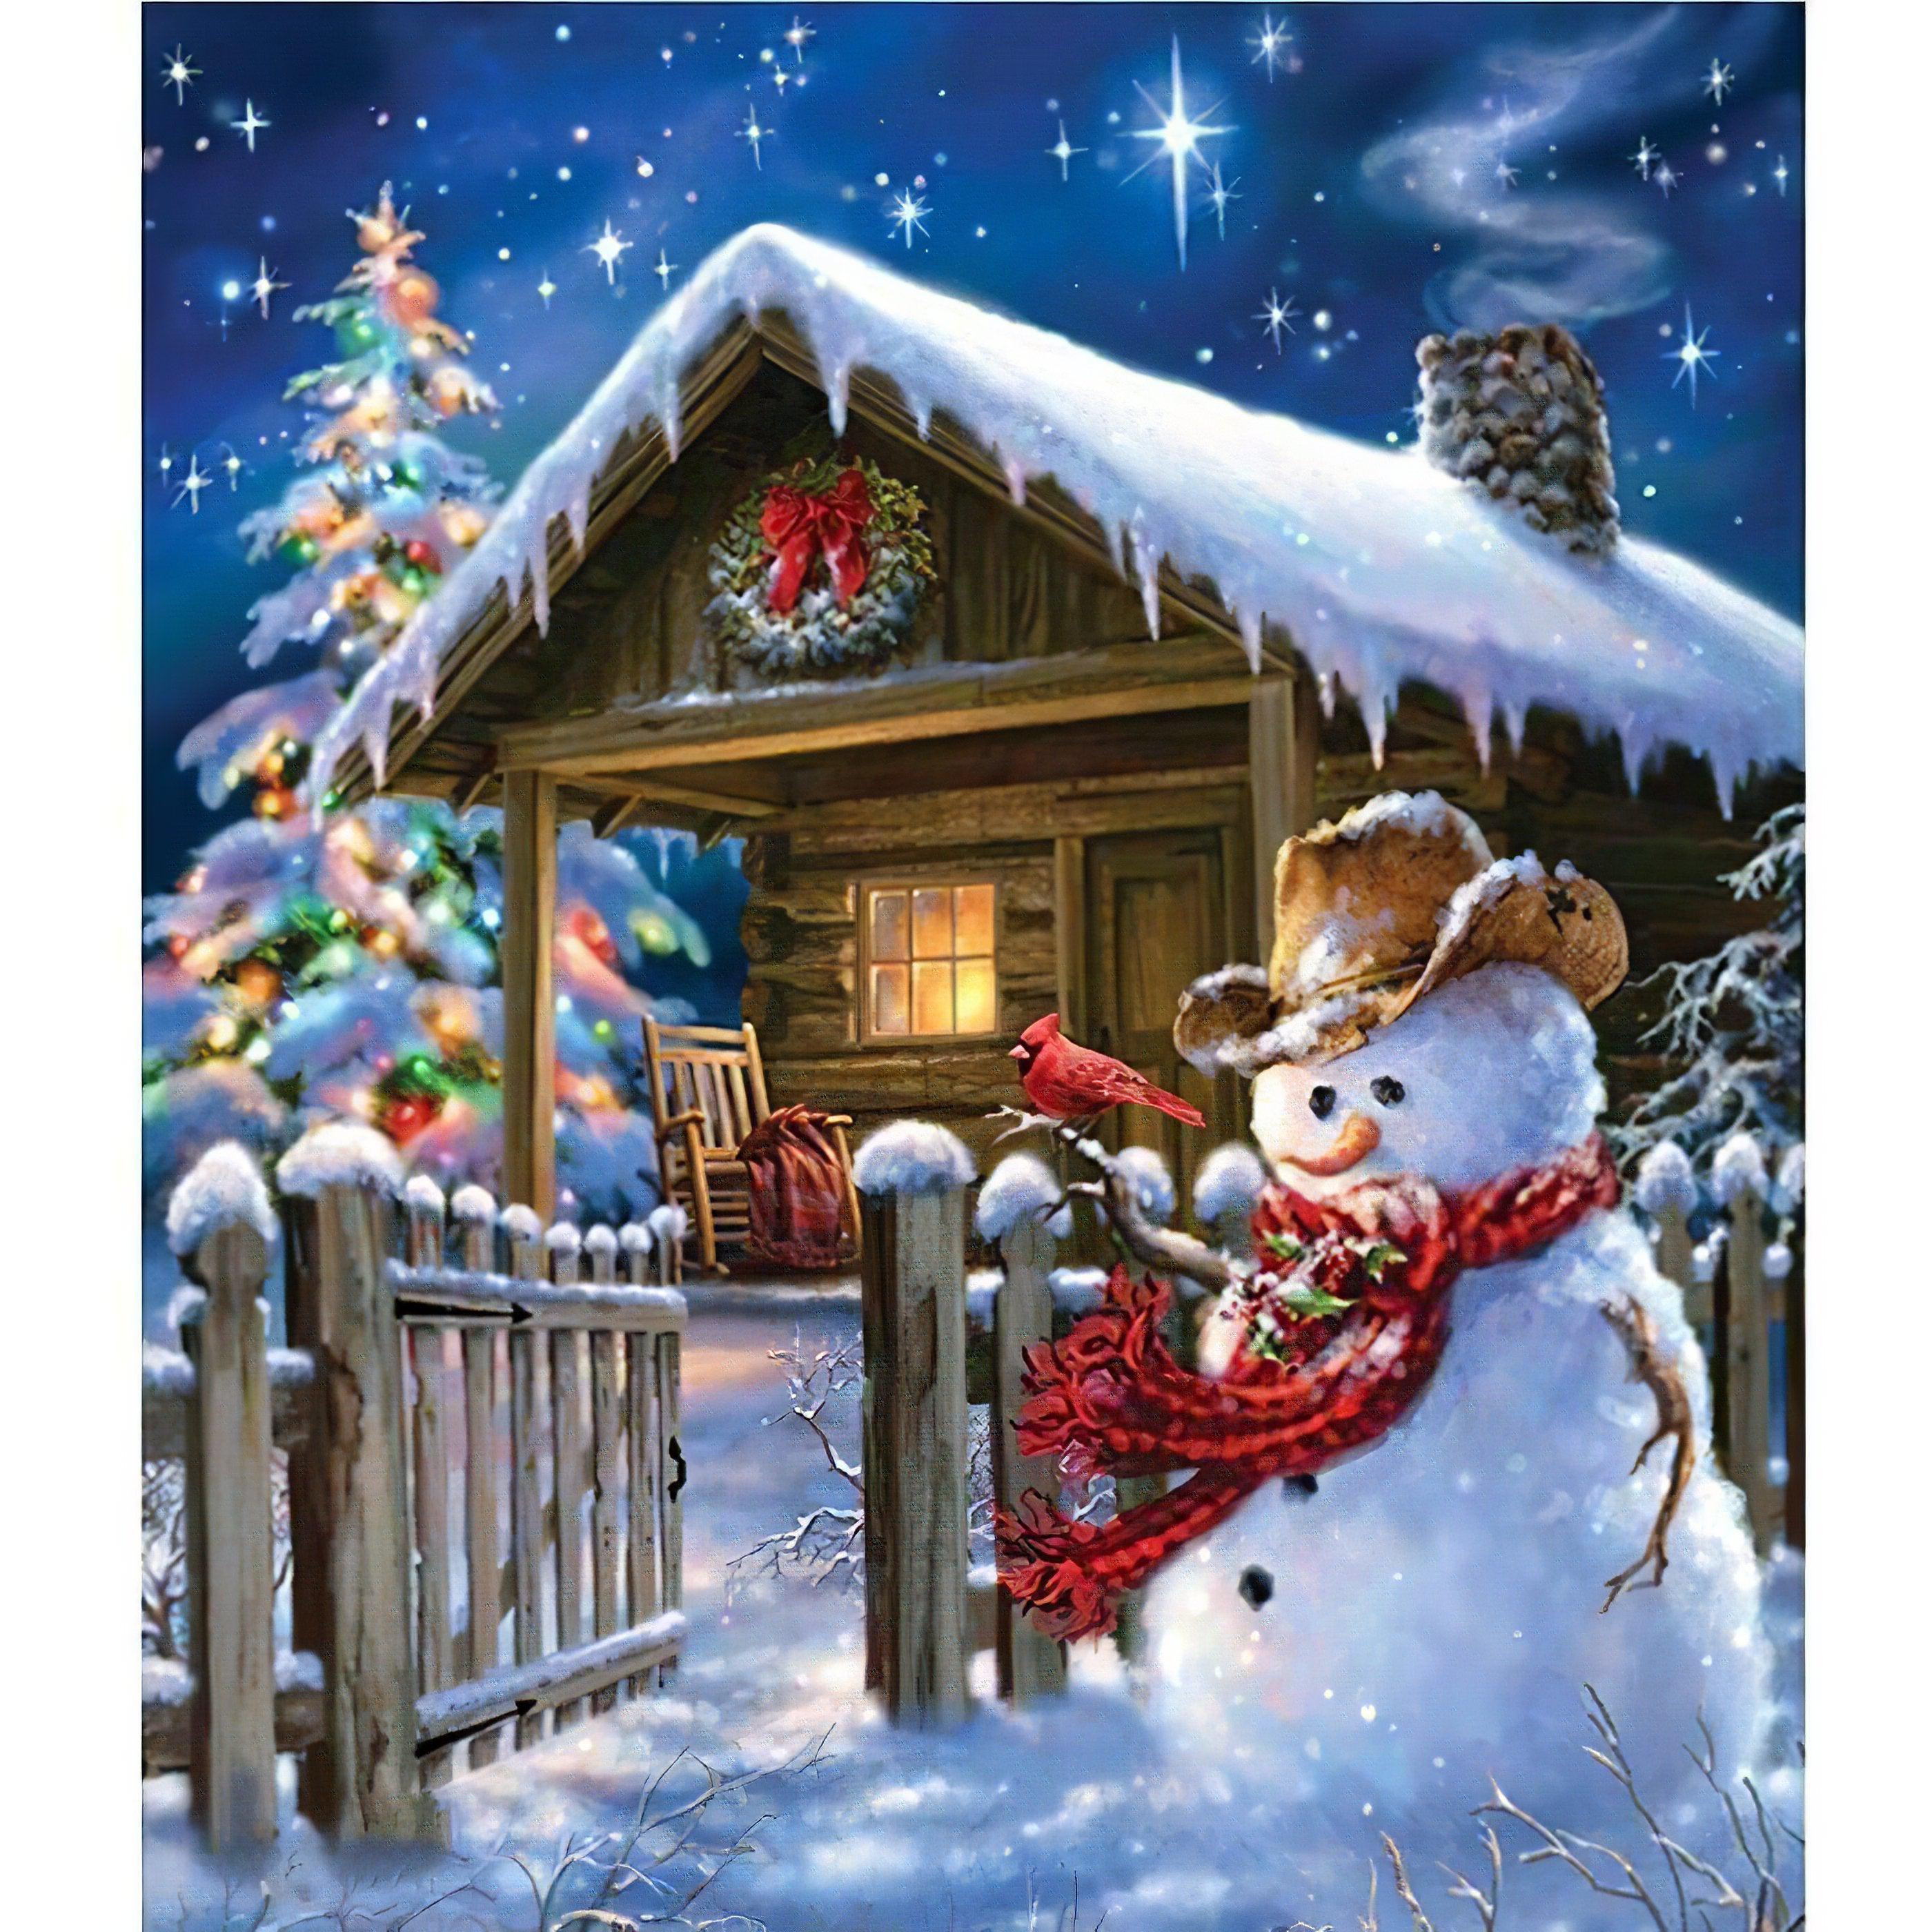 Keep festive with snowman guarding your home art.Garder Votre Maison Bonhomme De Neige - Diamondartlove